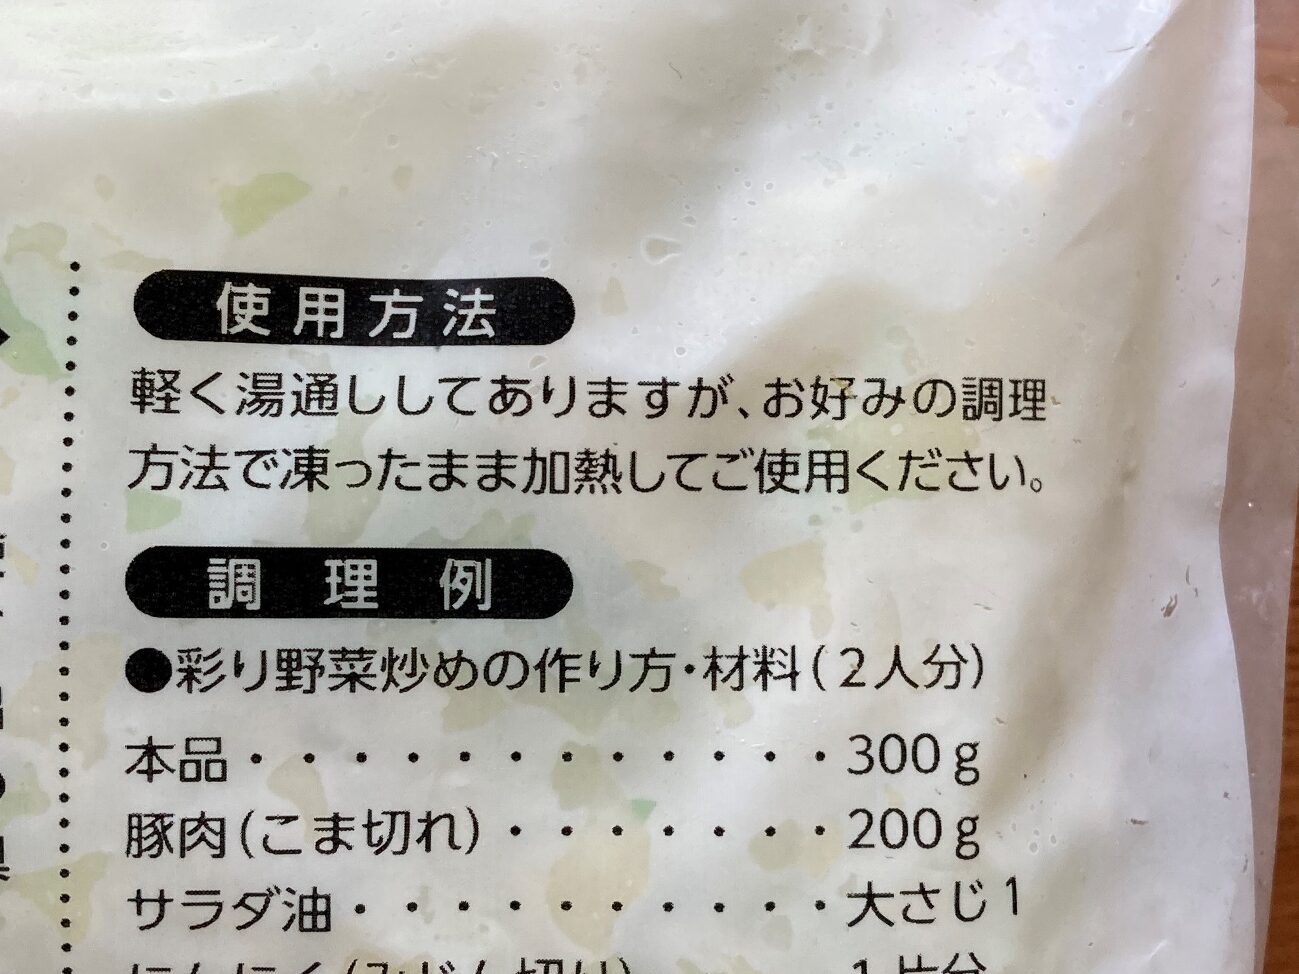 業務スーパーの彩り炒め用野菜ミックスのパッケージに記載されている使用方法